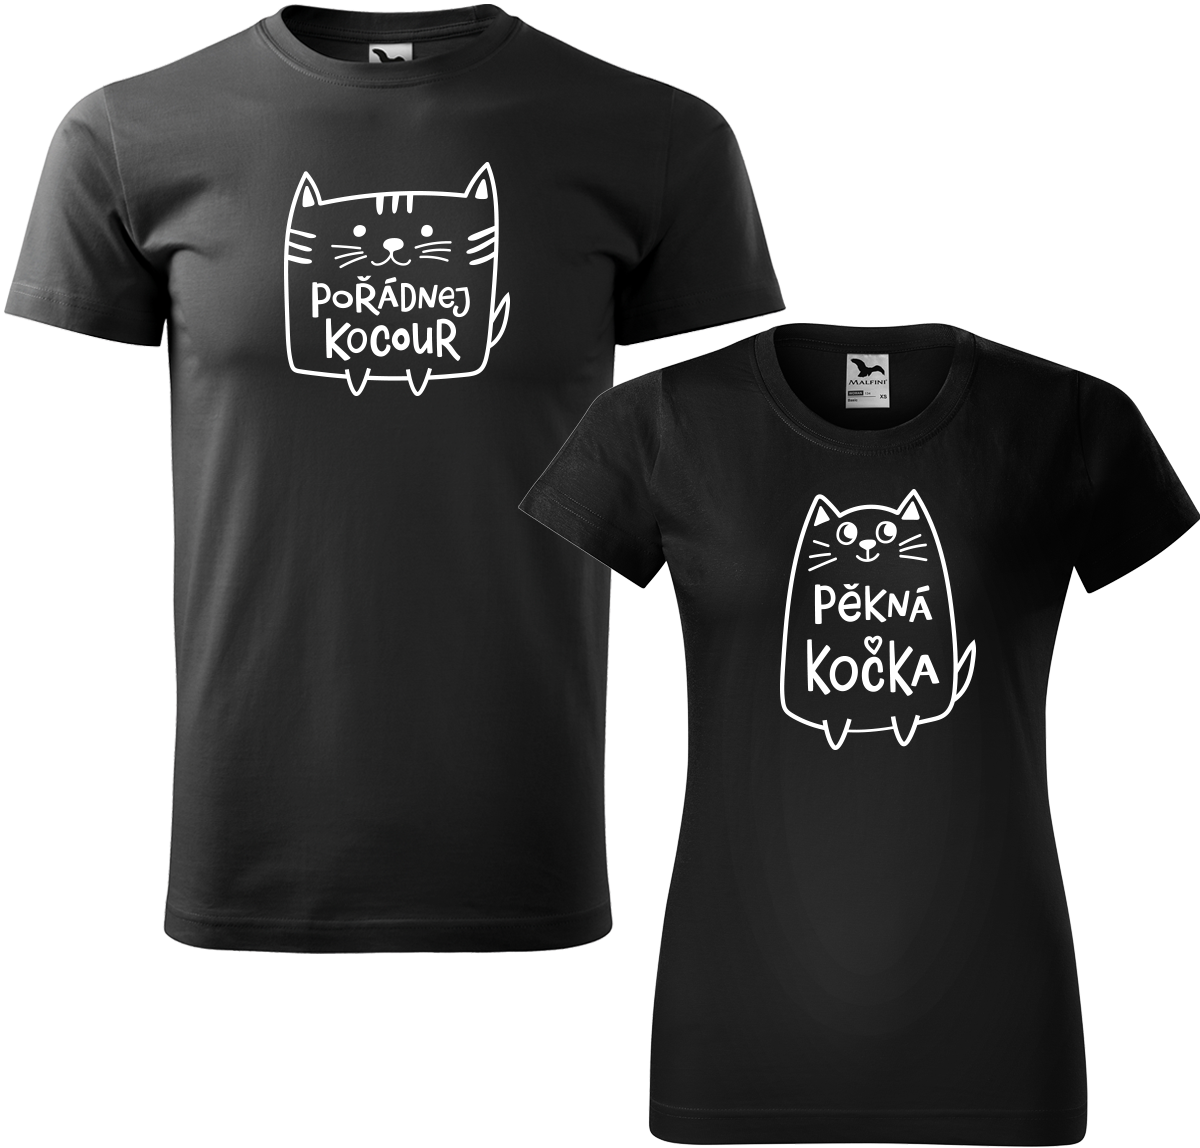 Trička pro páry - Pořádnej kocour a pěkná kočka Barva: Černá (01), Velikost dámské tričko: XL, Velikost pánské tričko: 4XL